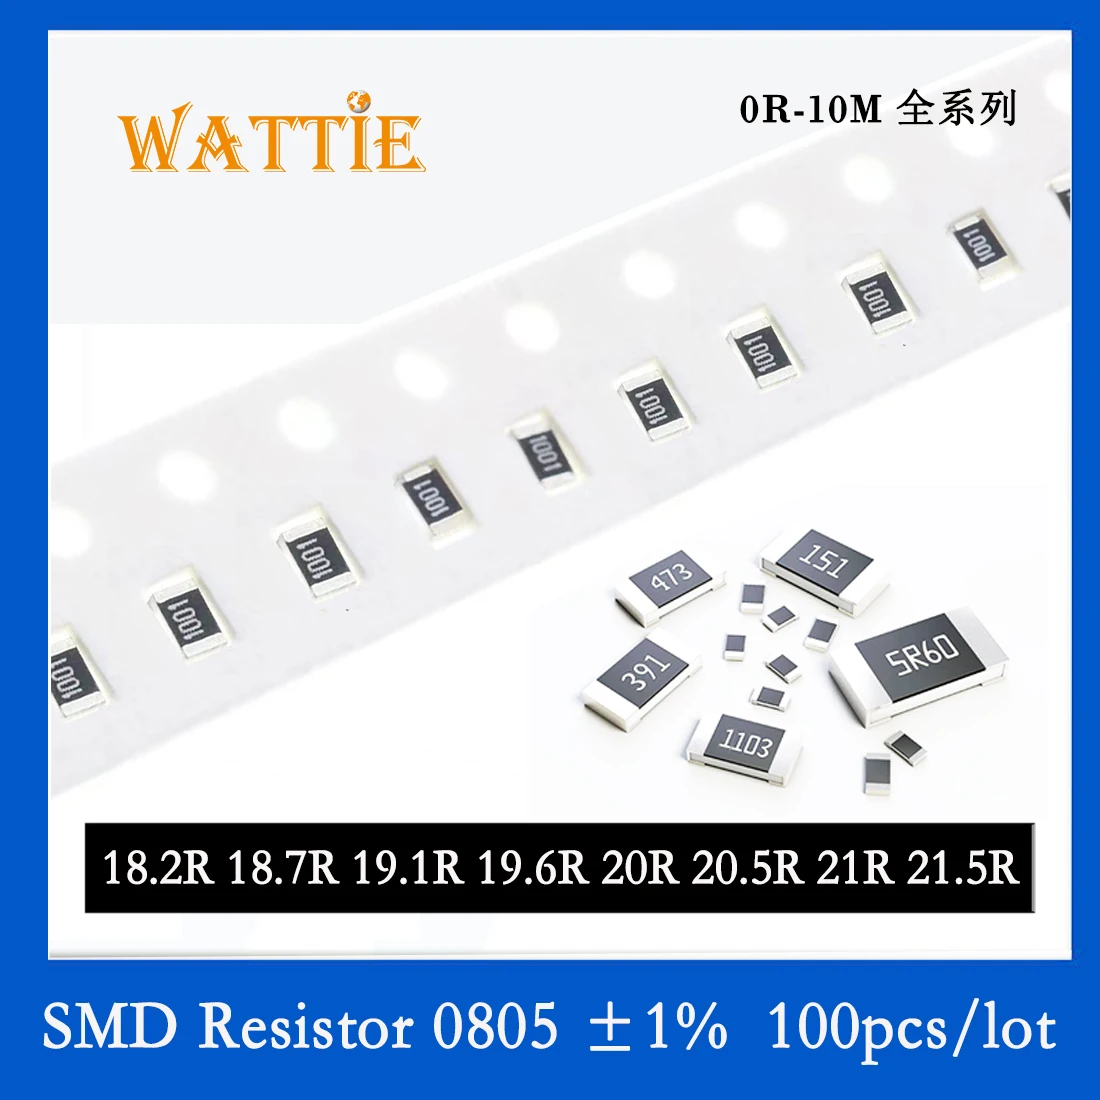 

SMD Resistor 0805 1% 18.2R 18.7R 19.1R 19.6R 20R 20.5R 21R 21.5R 100PCS/lot chip resistors 1/8W 2.0mm*1.2mm